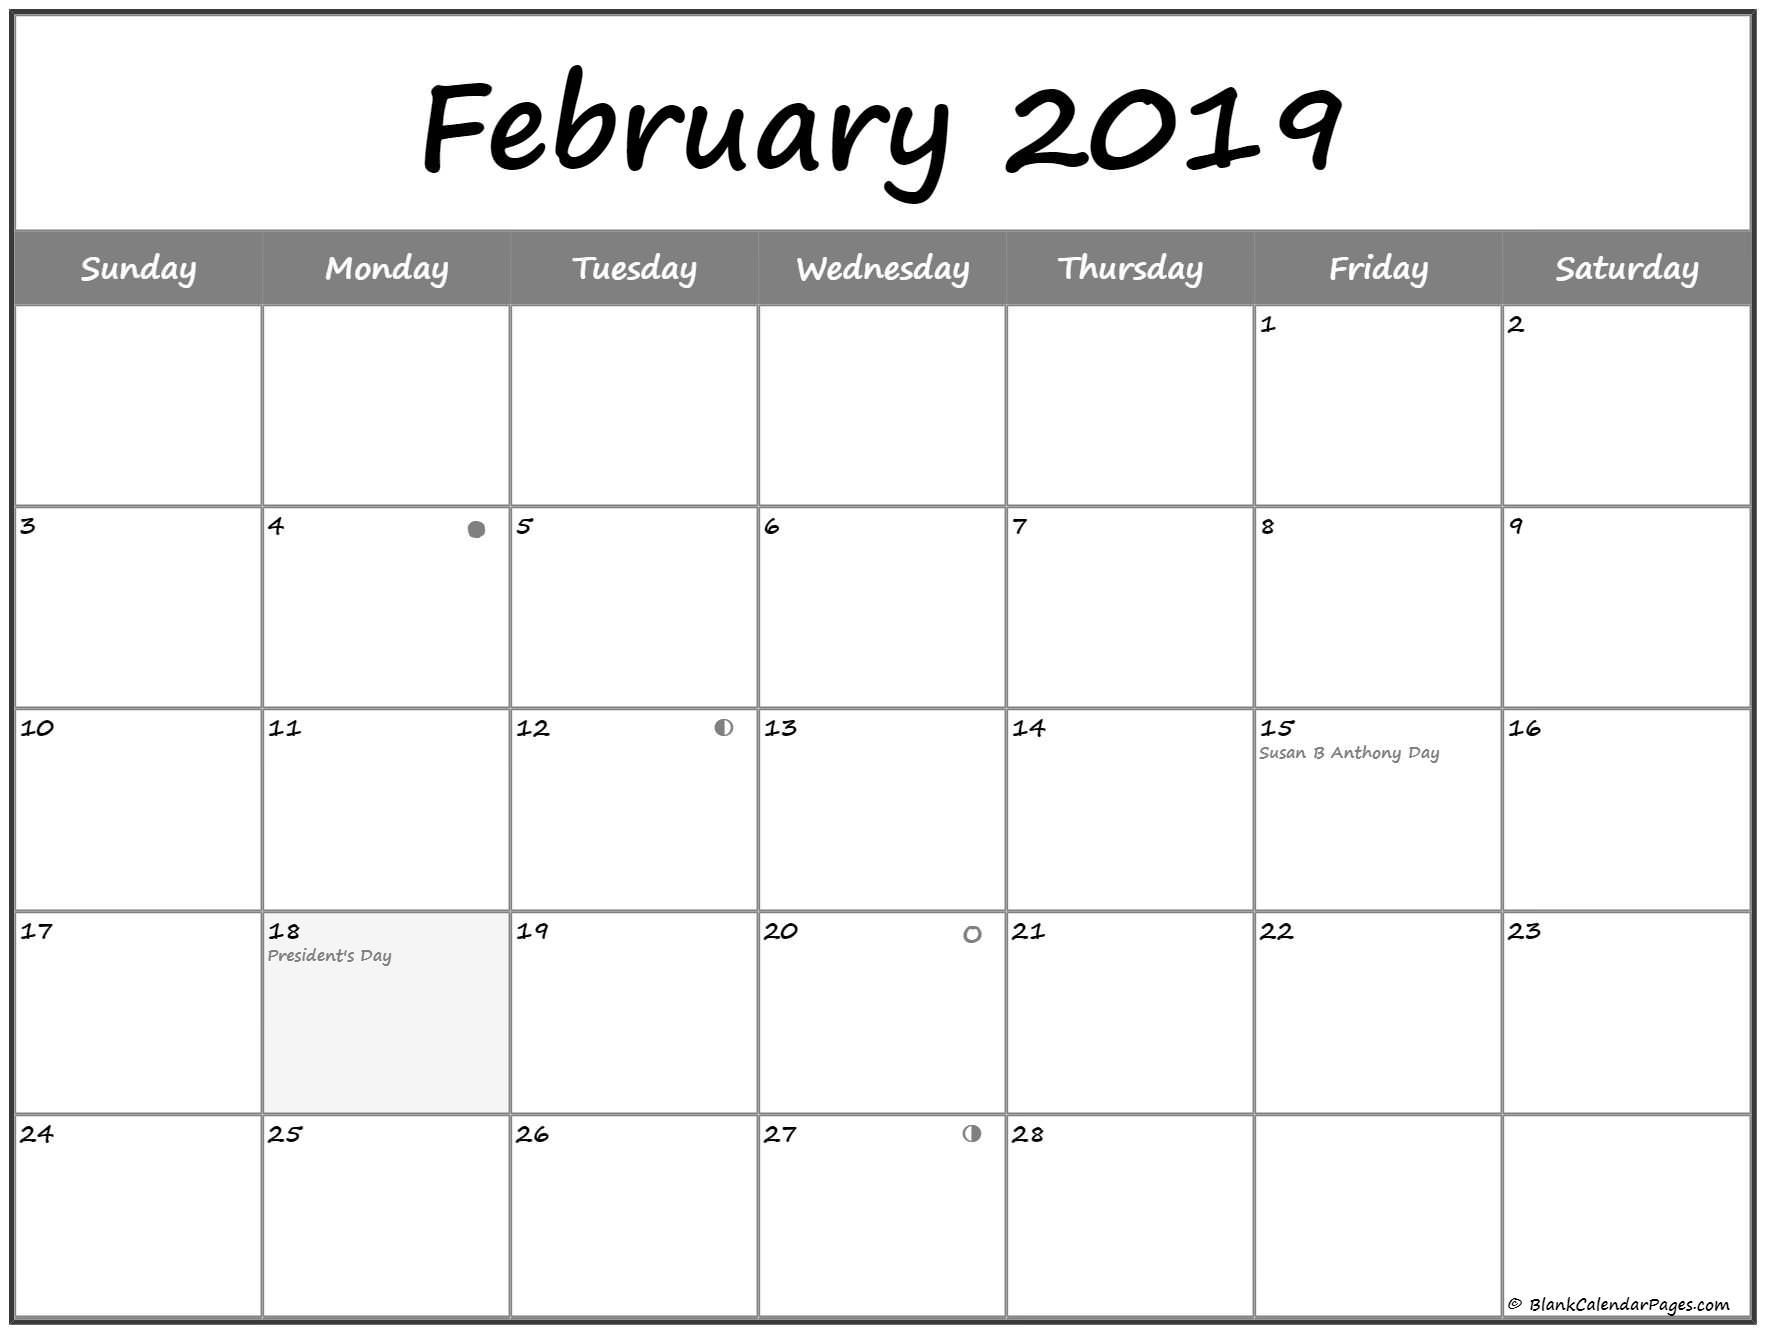 February 2019 Lunar Calendar. Moon Phase Calendar With Usa